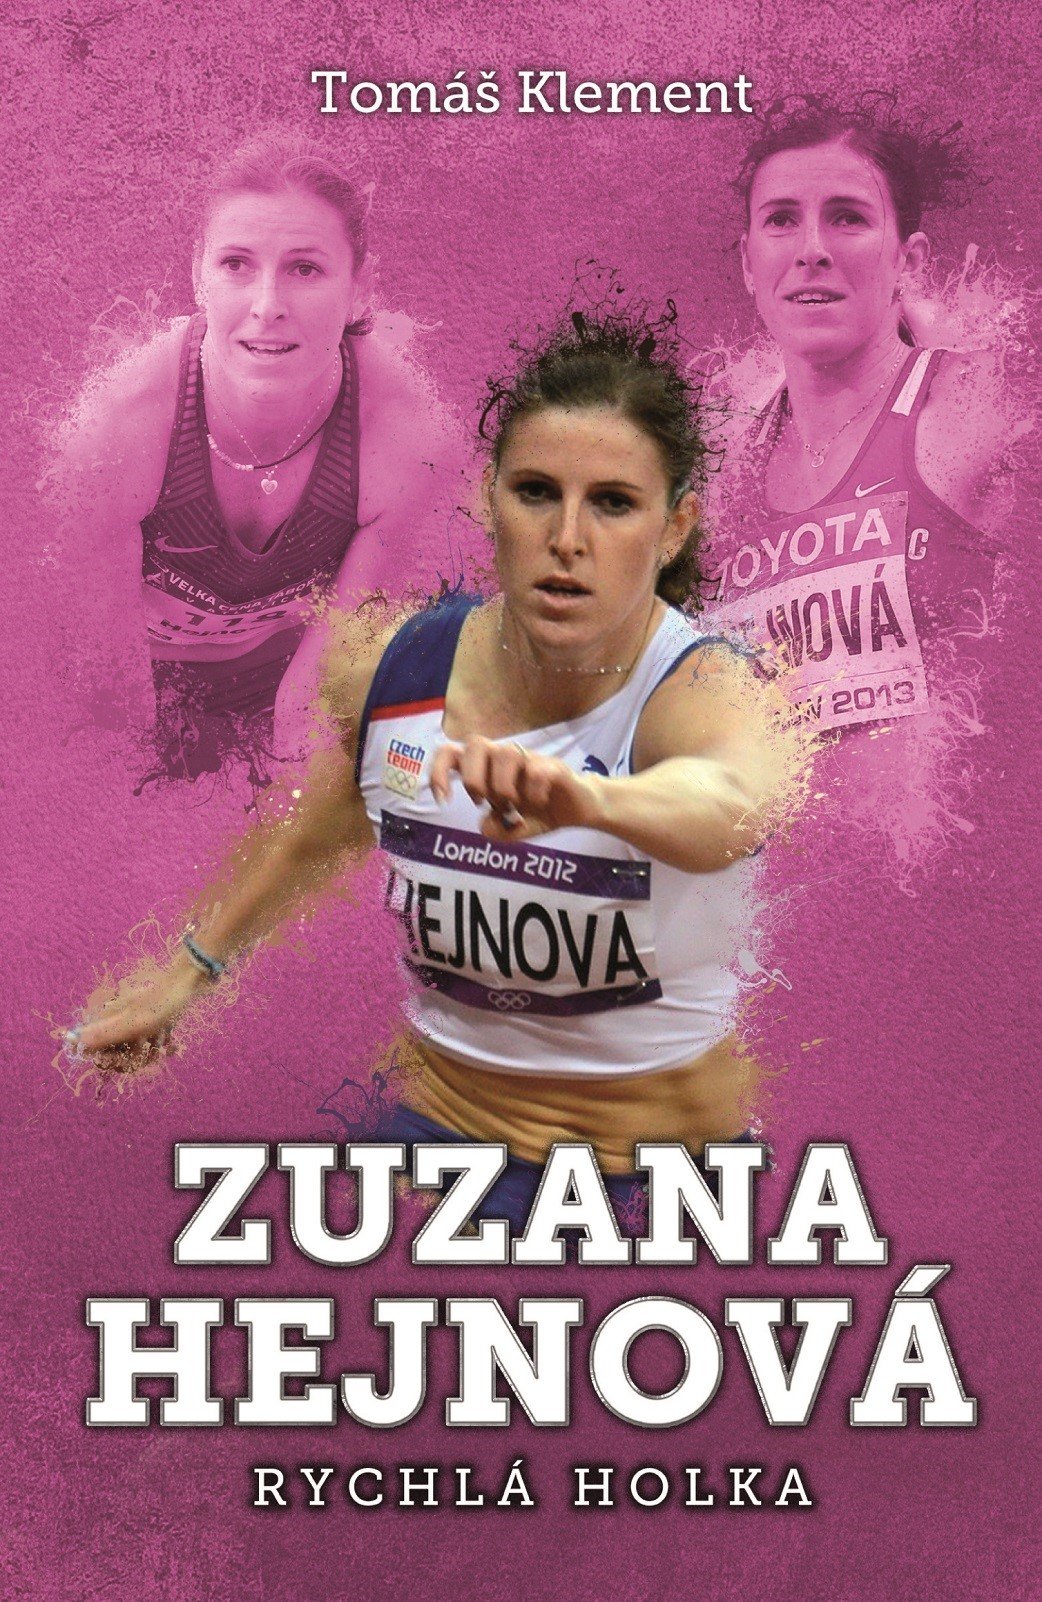 Levně Zuzana Hejnová: rychlá holka - Tomáš Klement